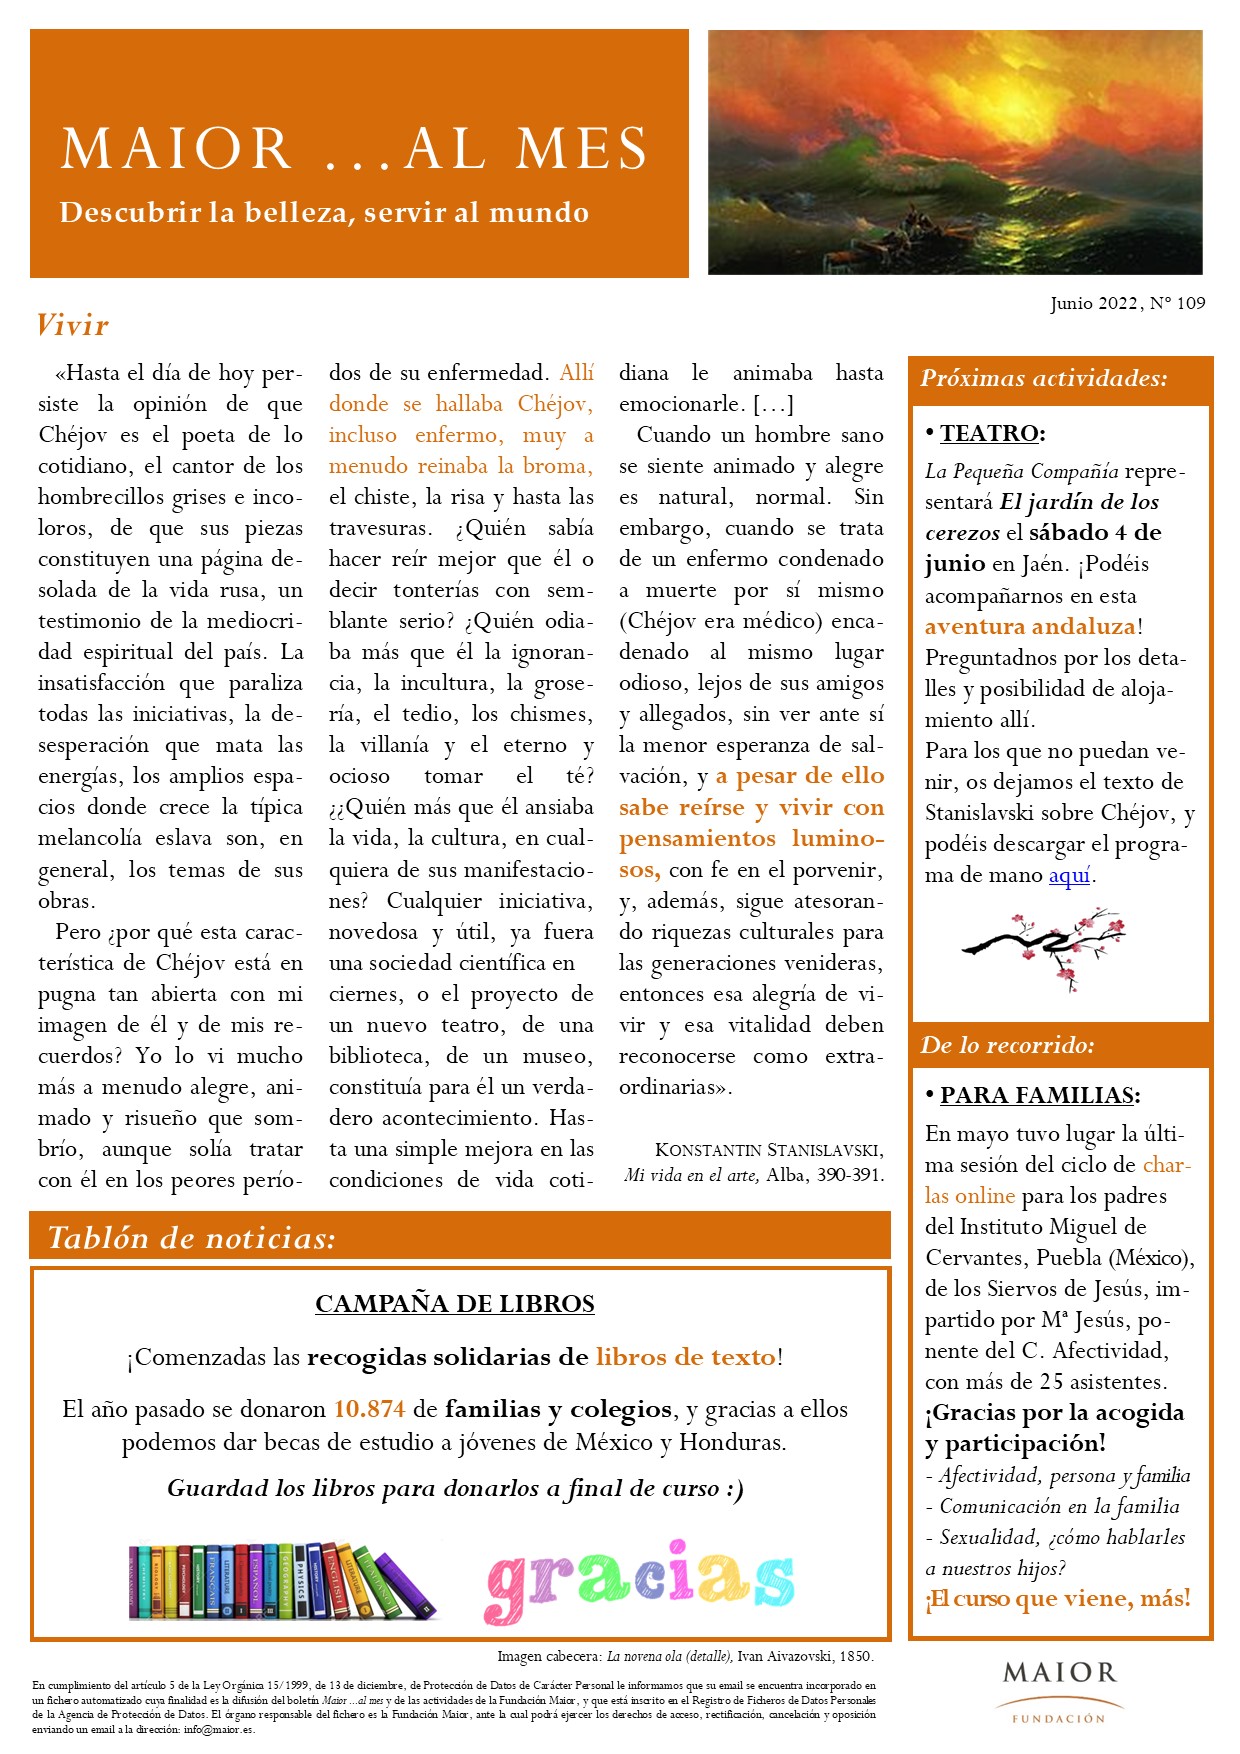 Boletín mensual de noticias y actividades de la Fundación Maior. Edición de junio 2022